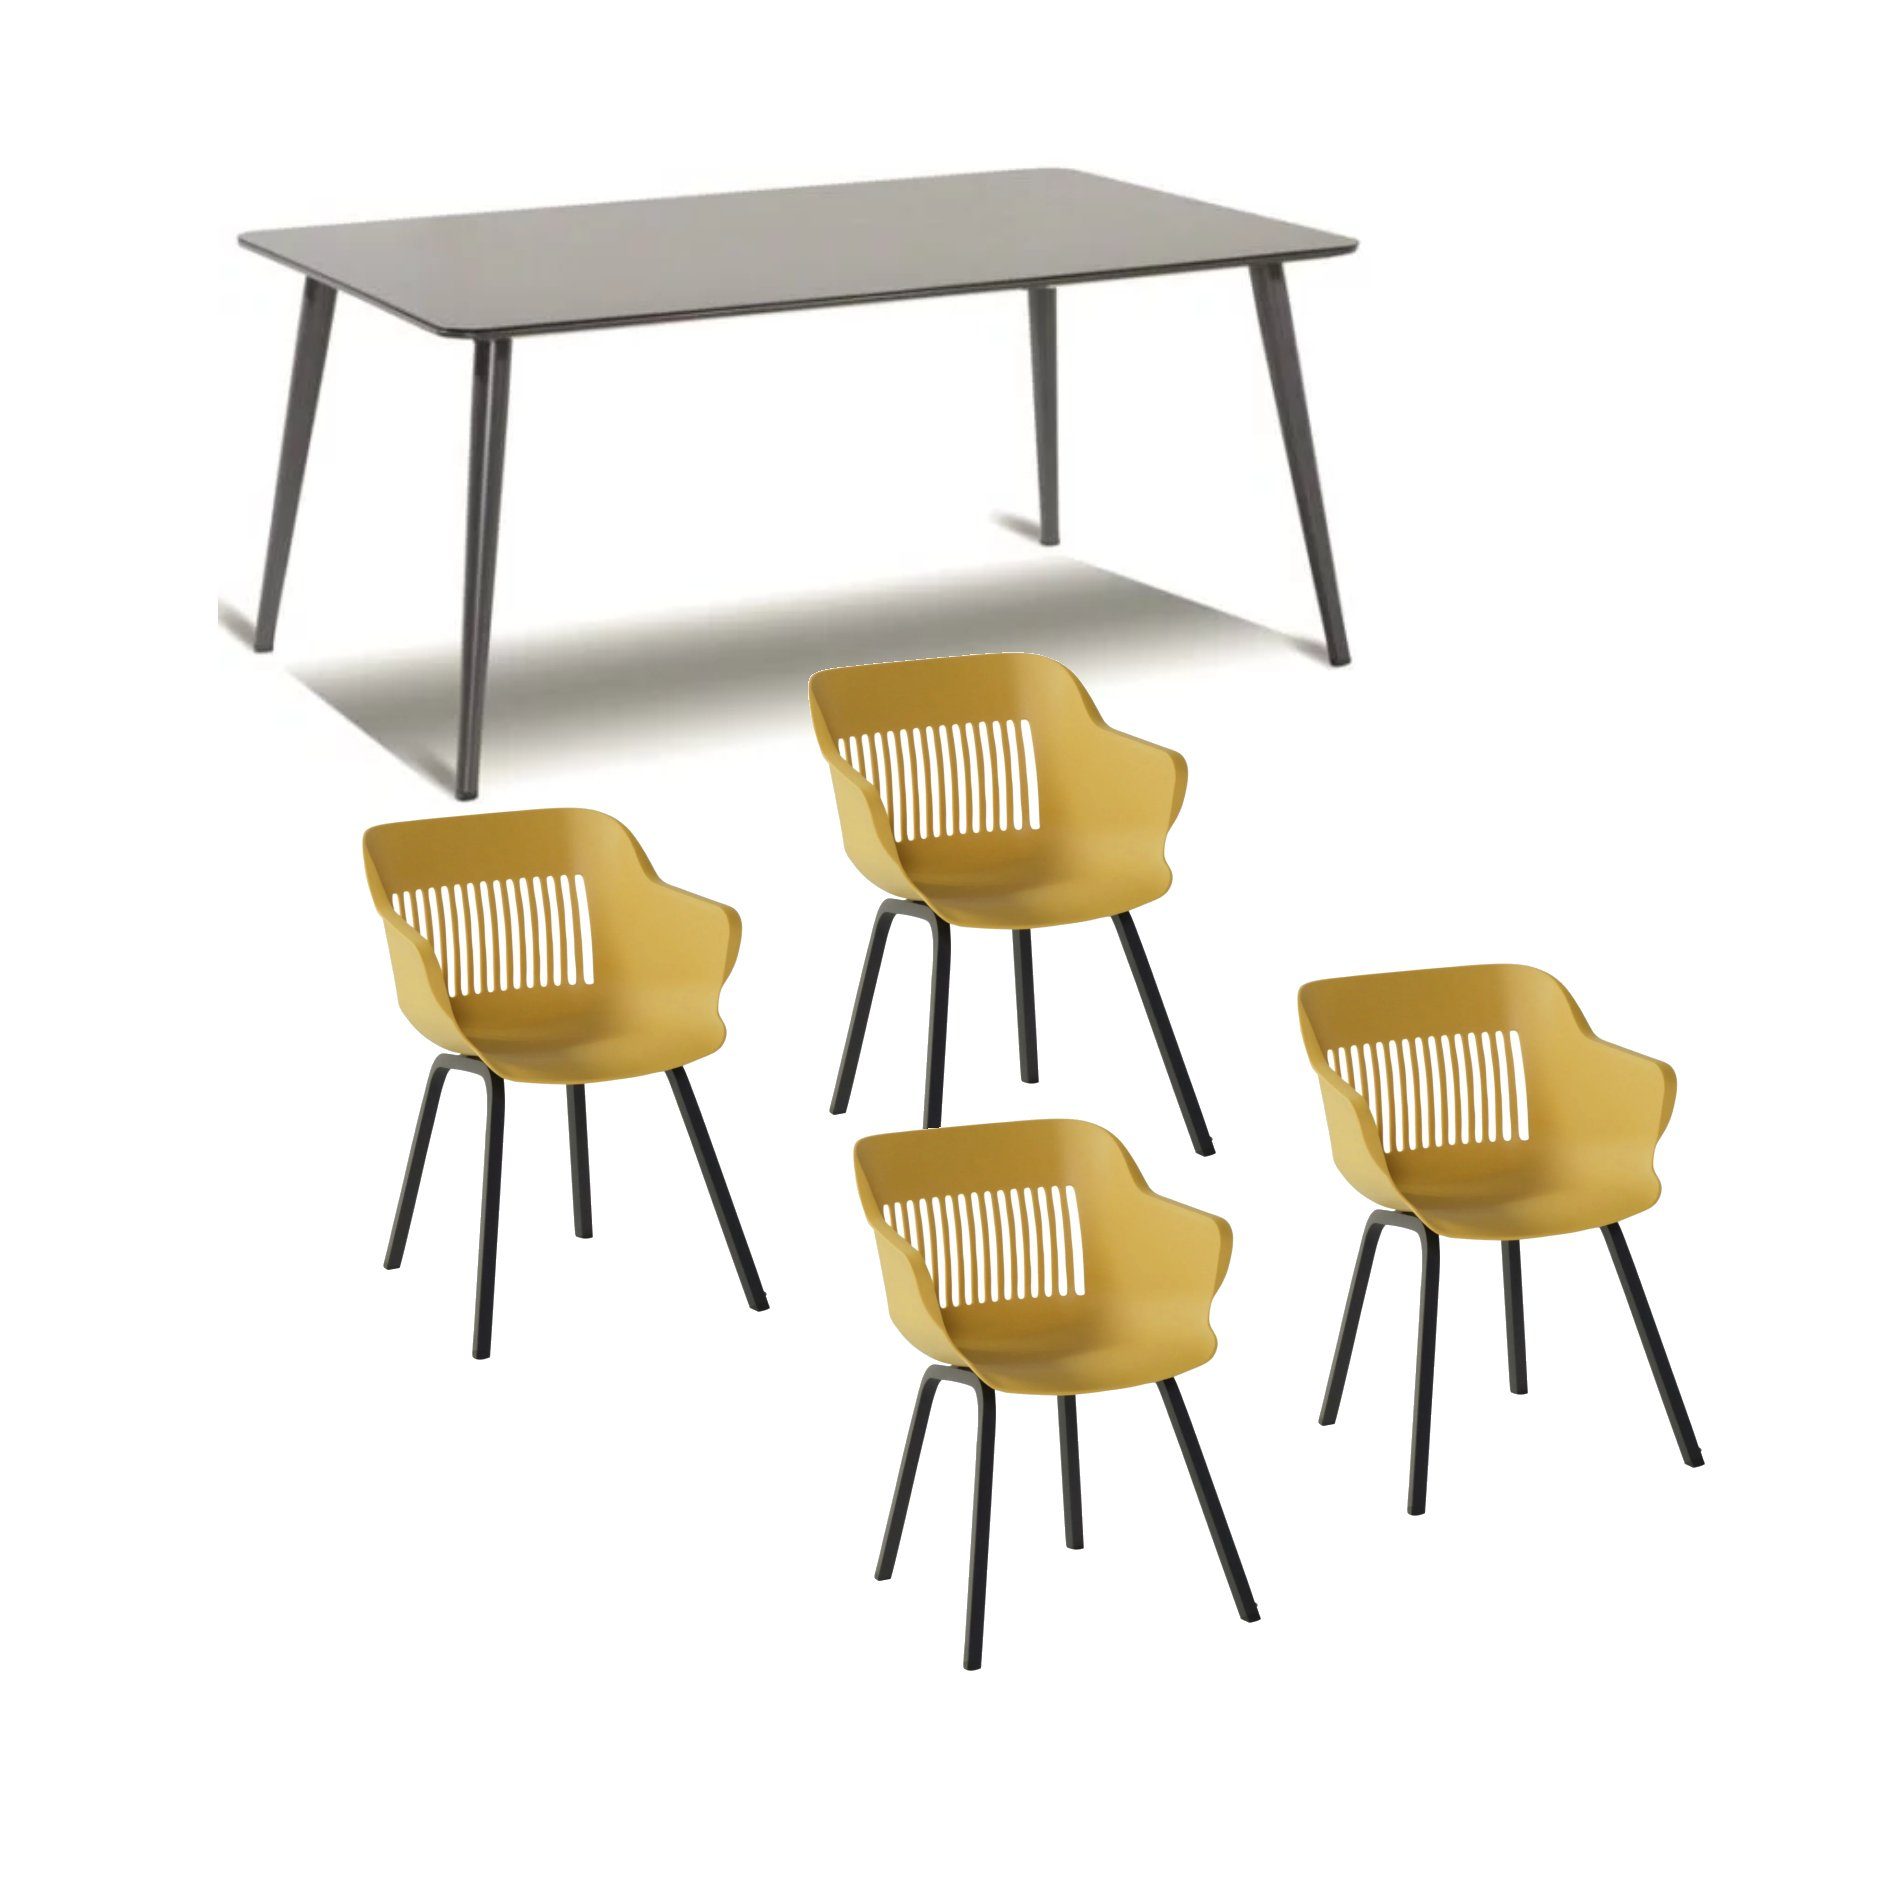 Hartman Gartenmöbel-Set mit Stuhl "Jill", Farbe curry, und Gartentisch 170x100 cm "Sophie Studio", Alu xerix, Tischplatte HPL xerix